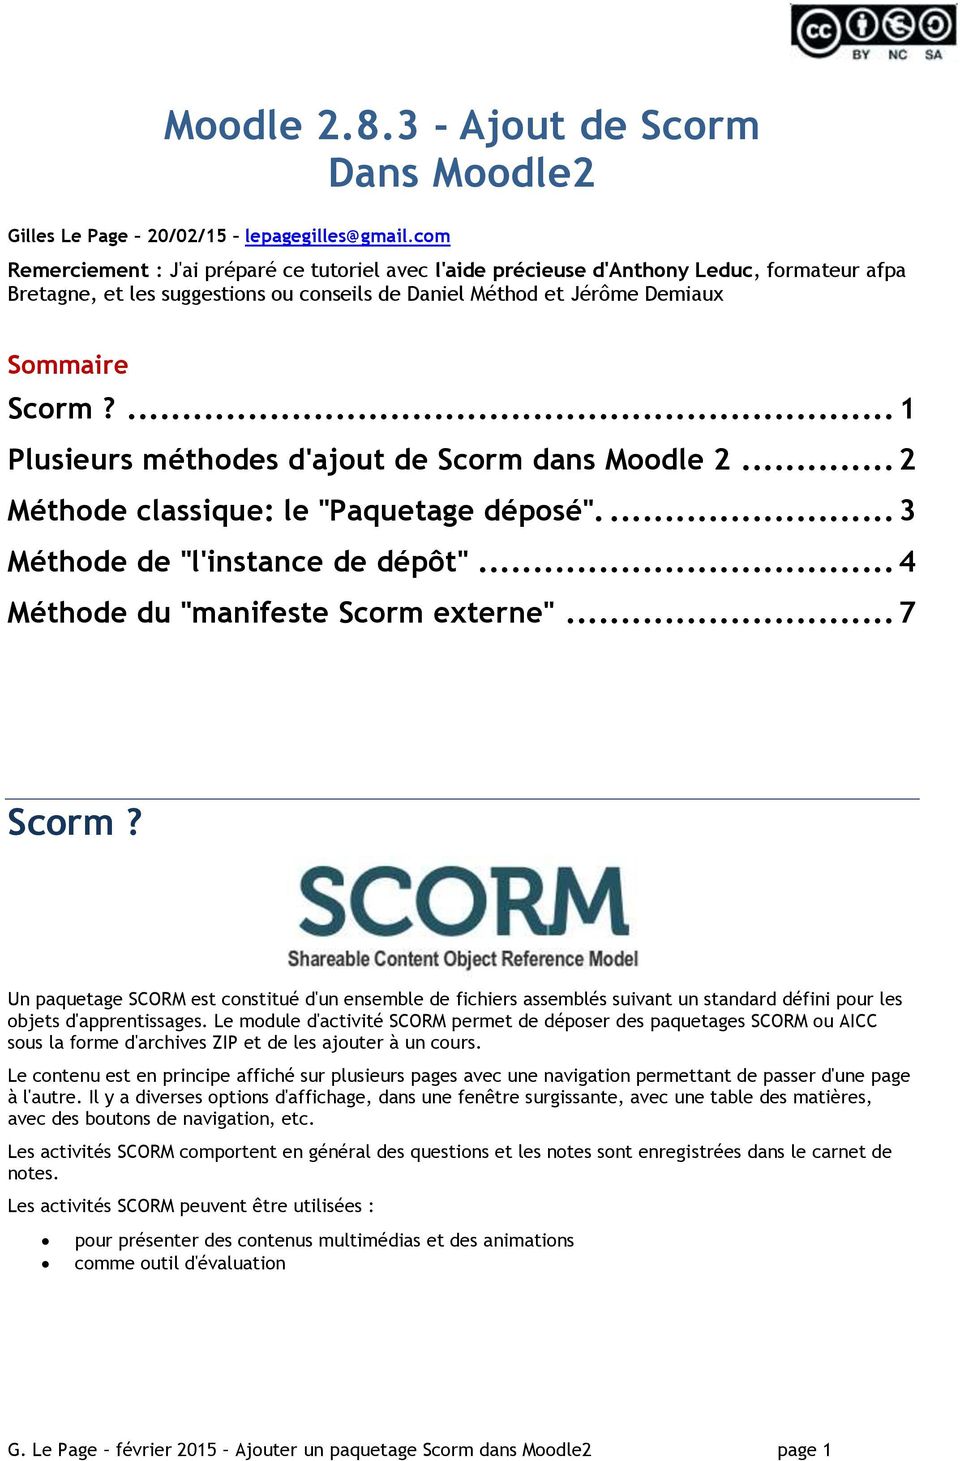 ... 1 Plusieurs méthodes d'ajout de Scorm dans Moodle 2... 2 Méthode classique: le "Paquetage déposé".... 3 Méthode de "l'instance de dépôt"... 4 Méthode du "manifeste Scorm externe"... 7 Scorm?